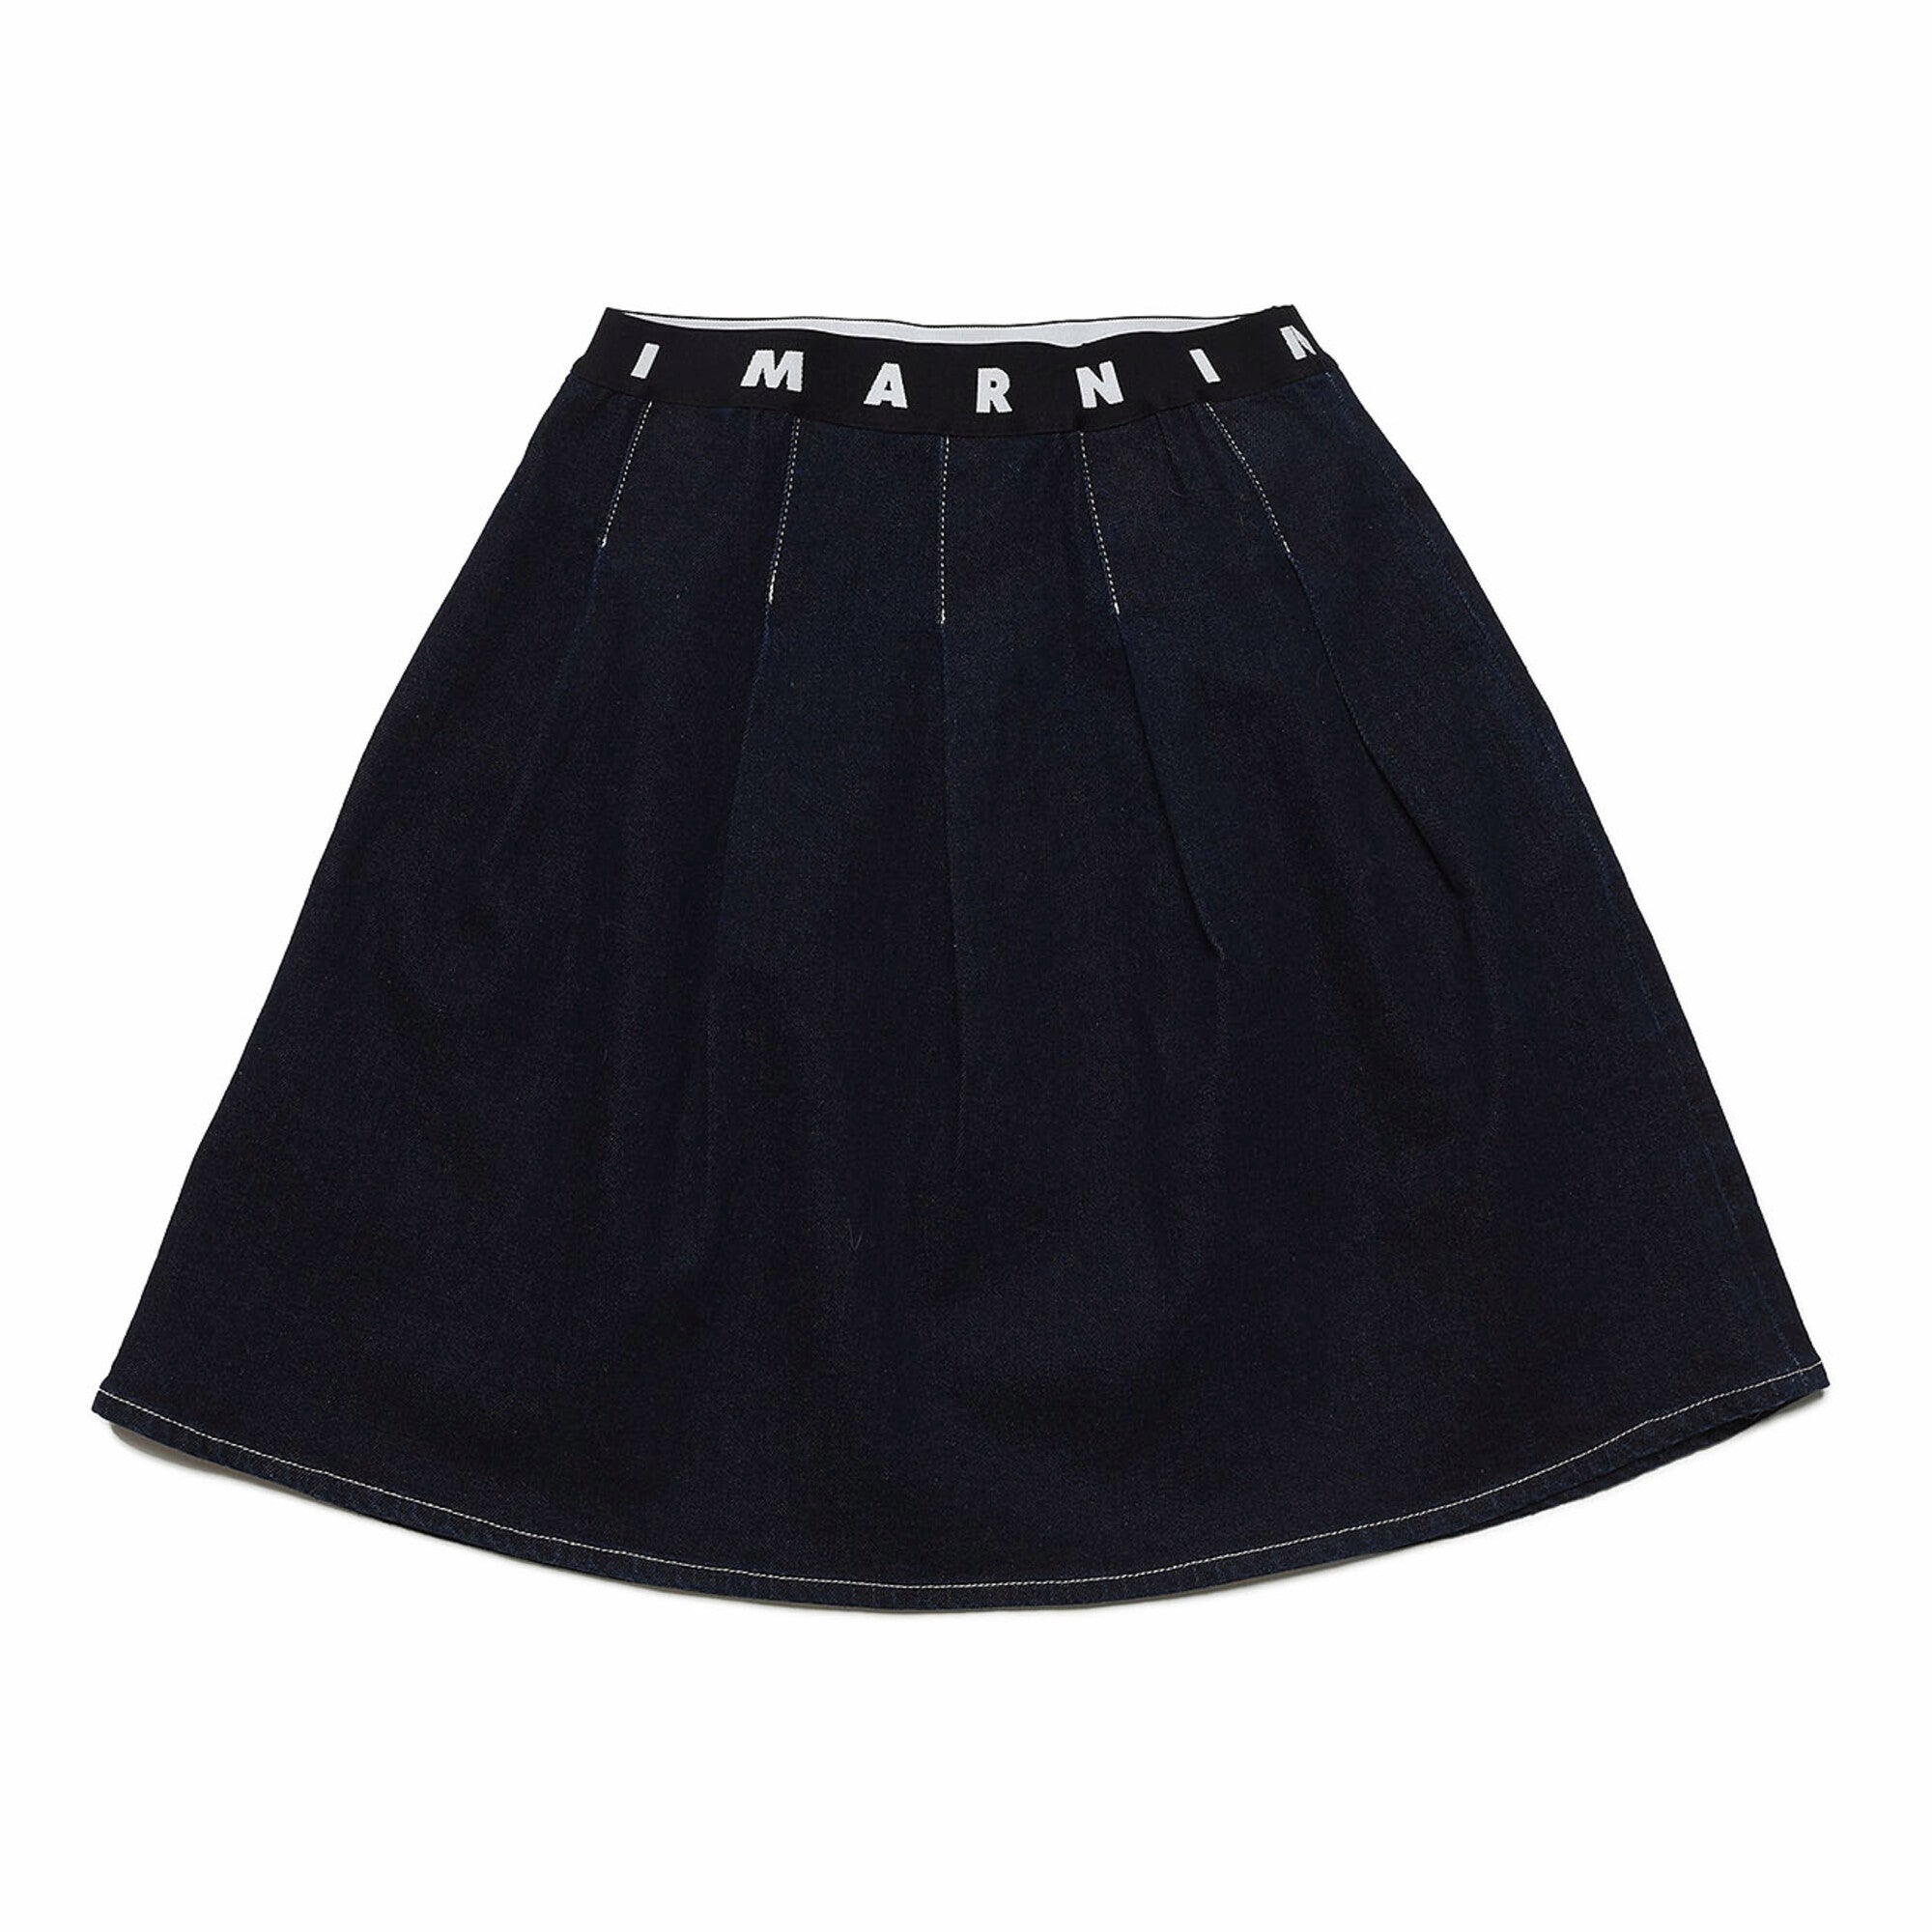 Girls Black Denim Skirt